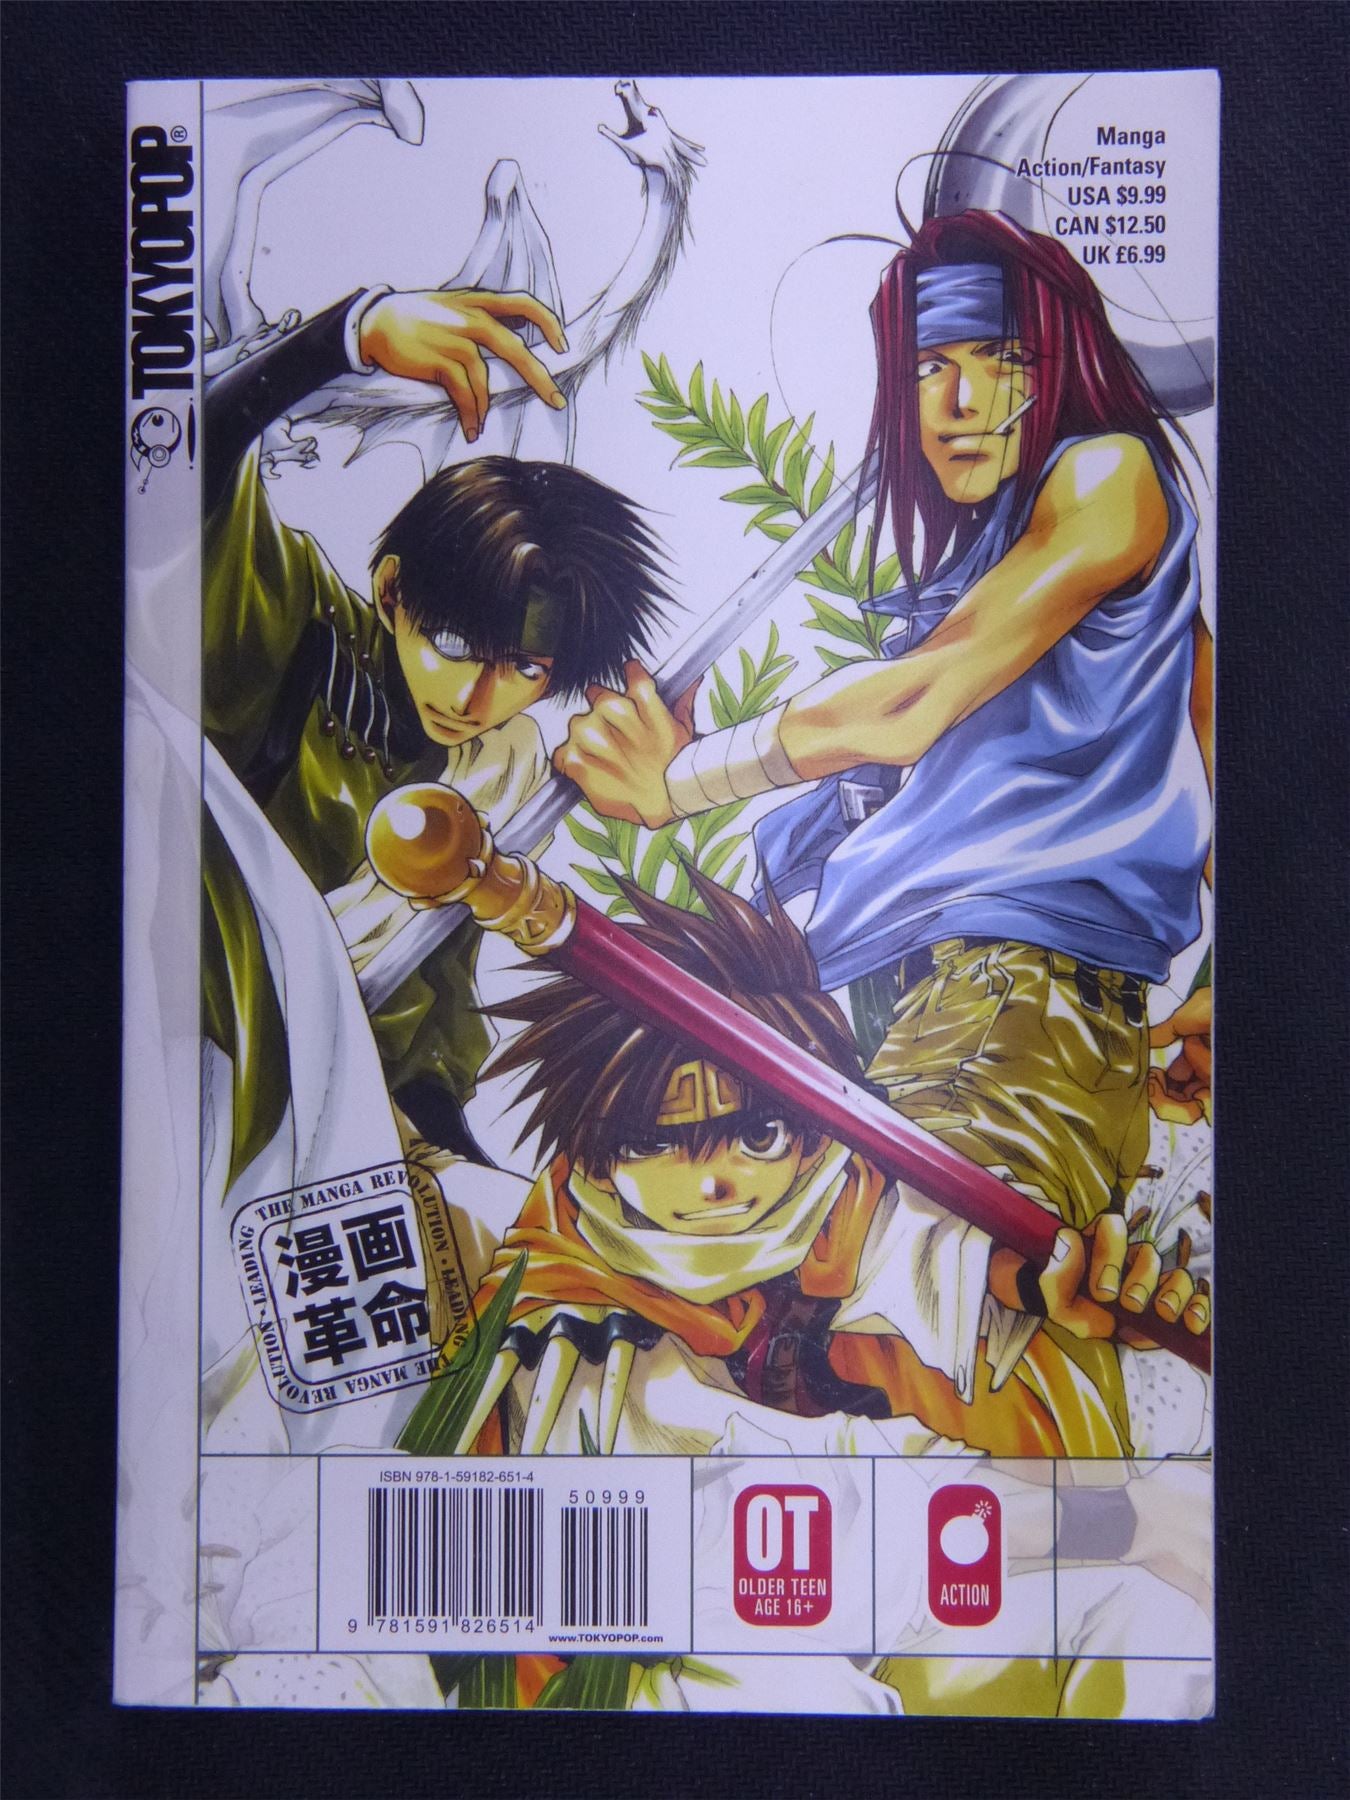 USED - Saiyuki - Volume 1 - Manga #1R